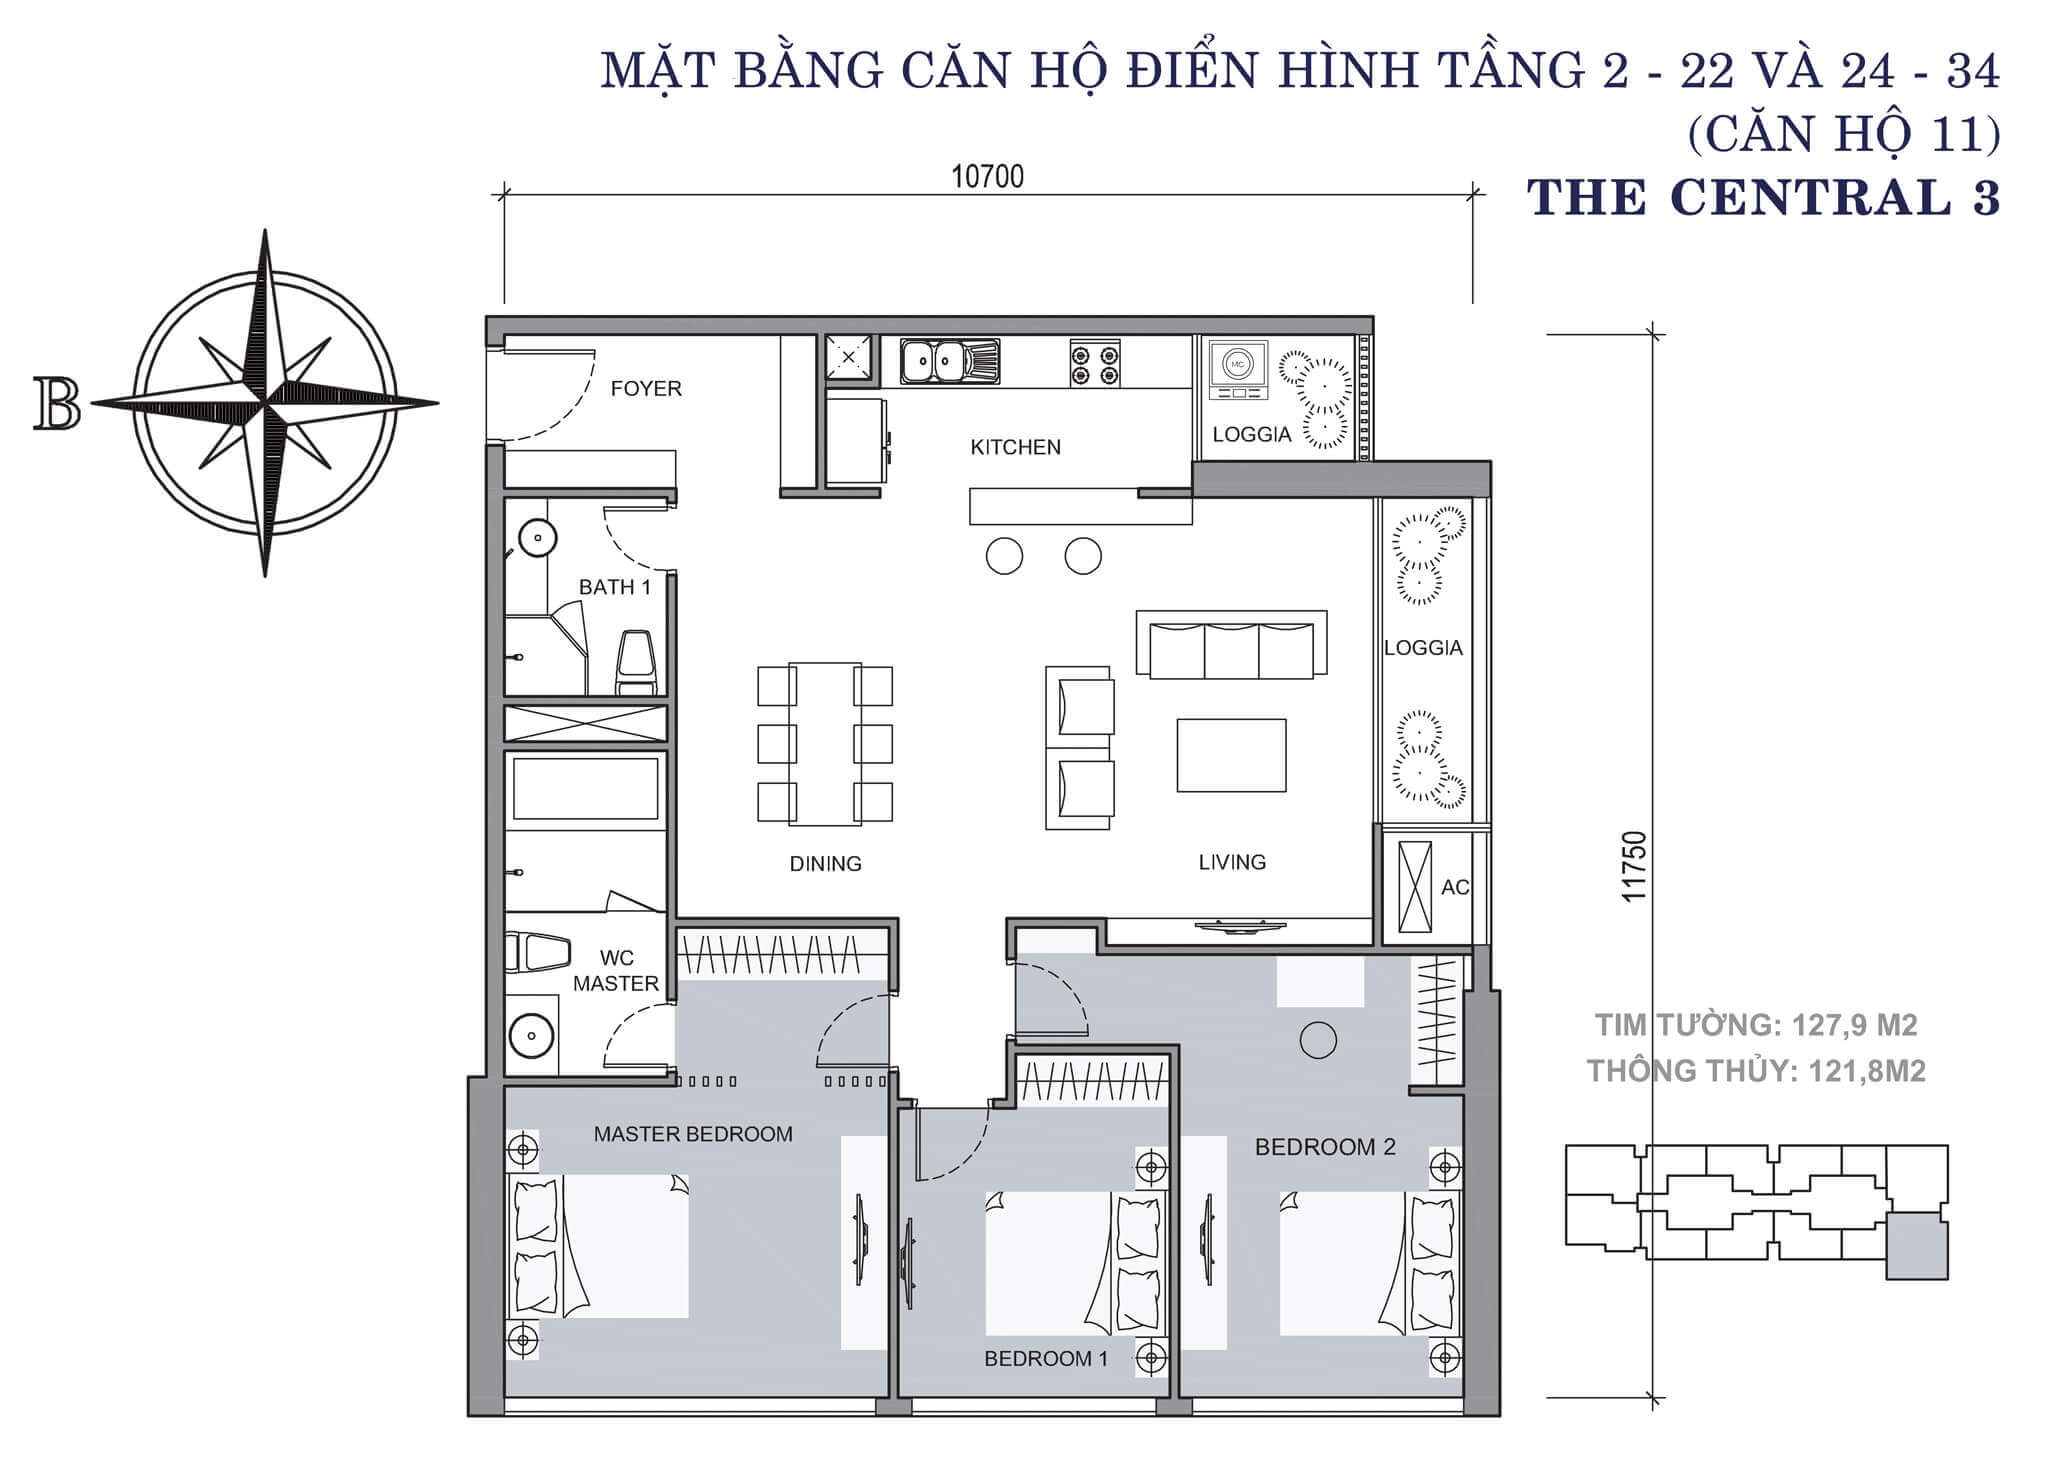 layout căn hộ số 11 tòa Central 3 tầng 2-34  